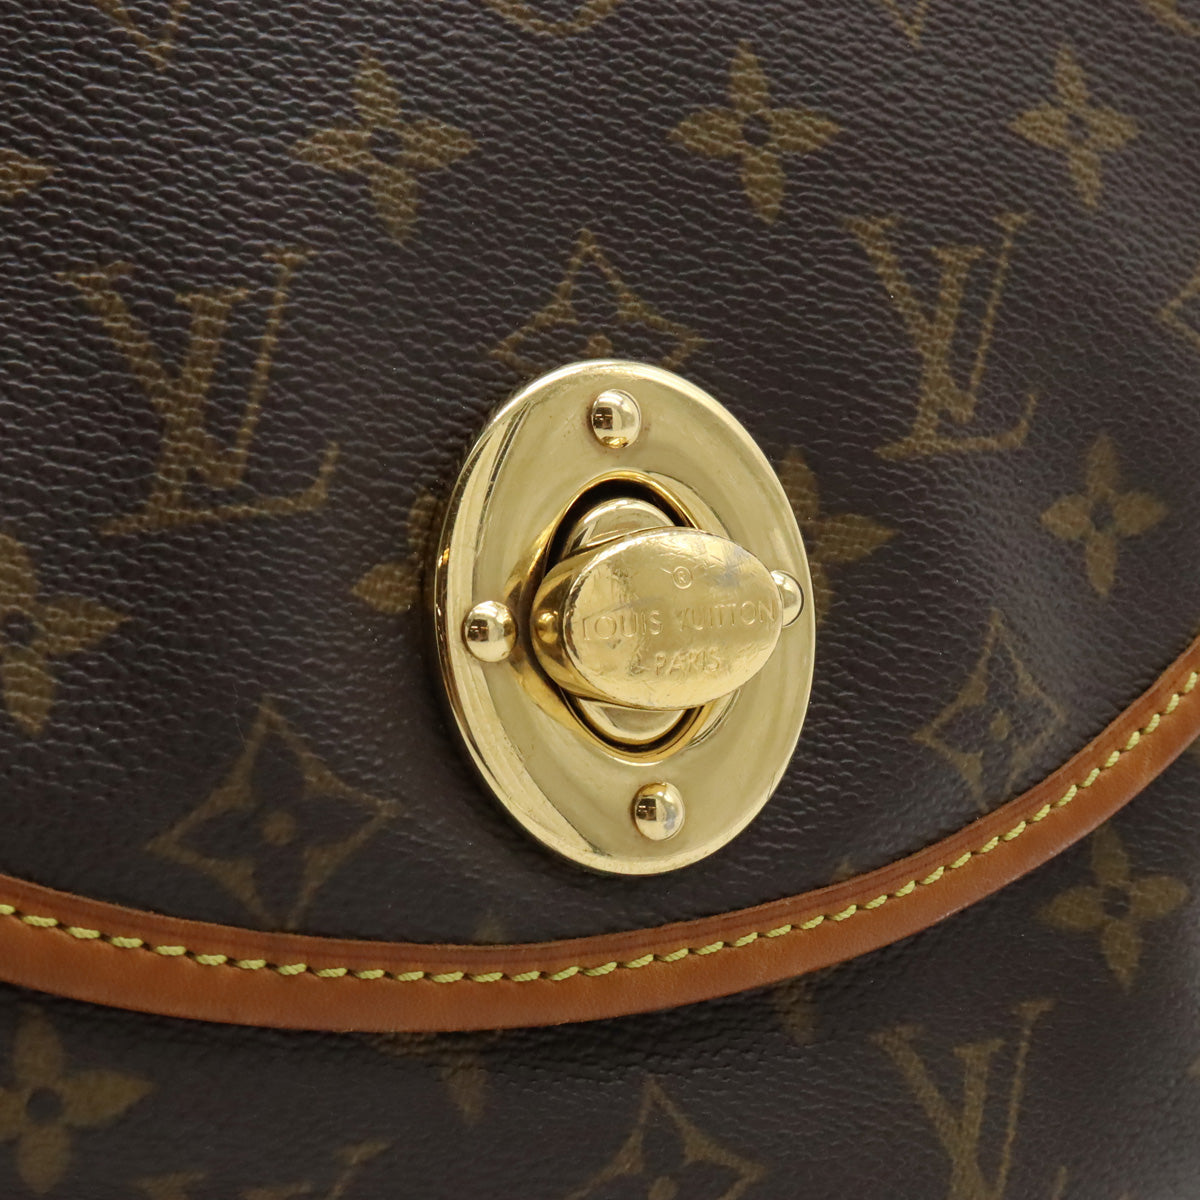 Louis Vuitton - Tulum GM Monogram Canvas Shoulder Bag